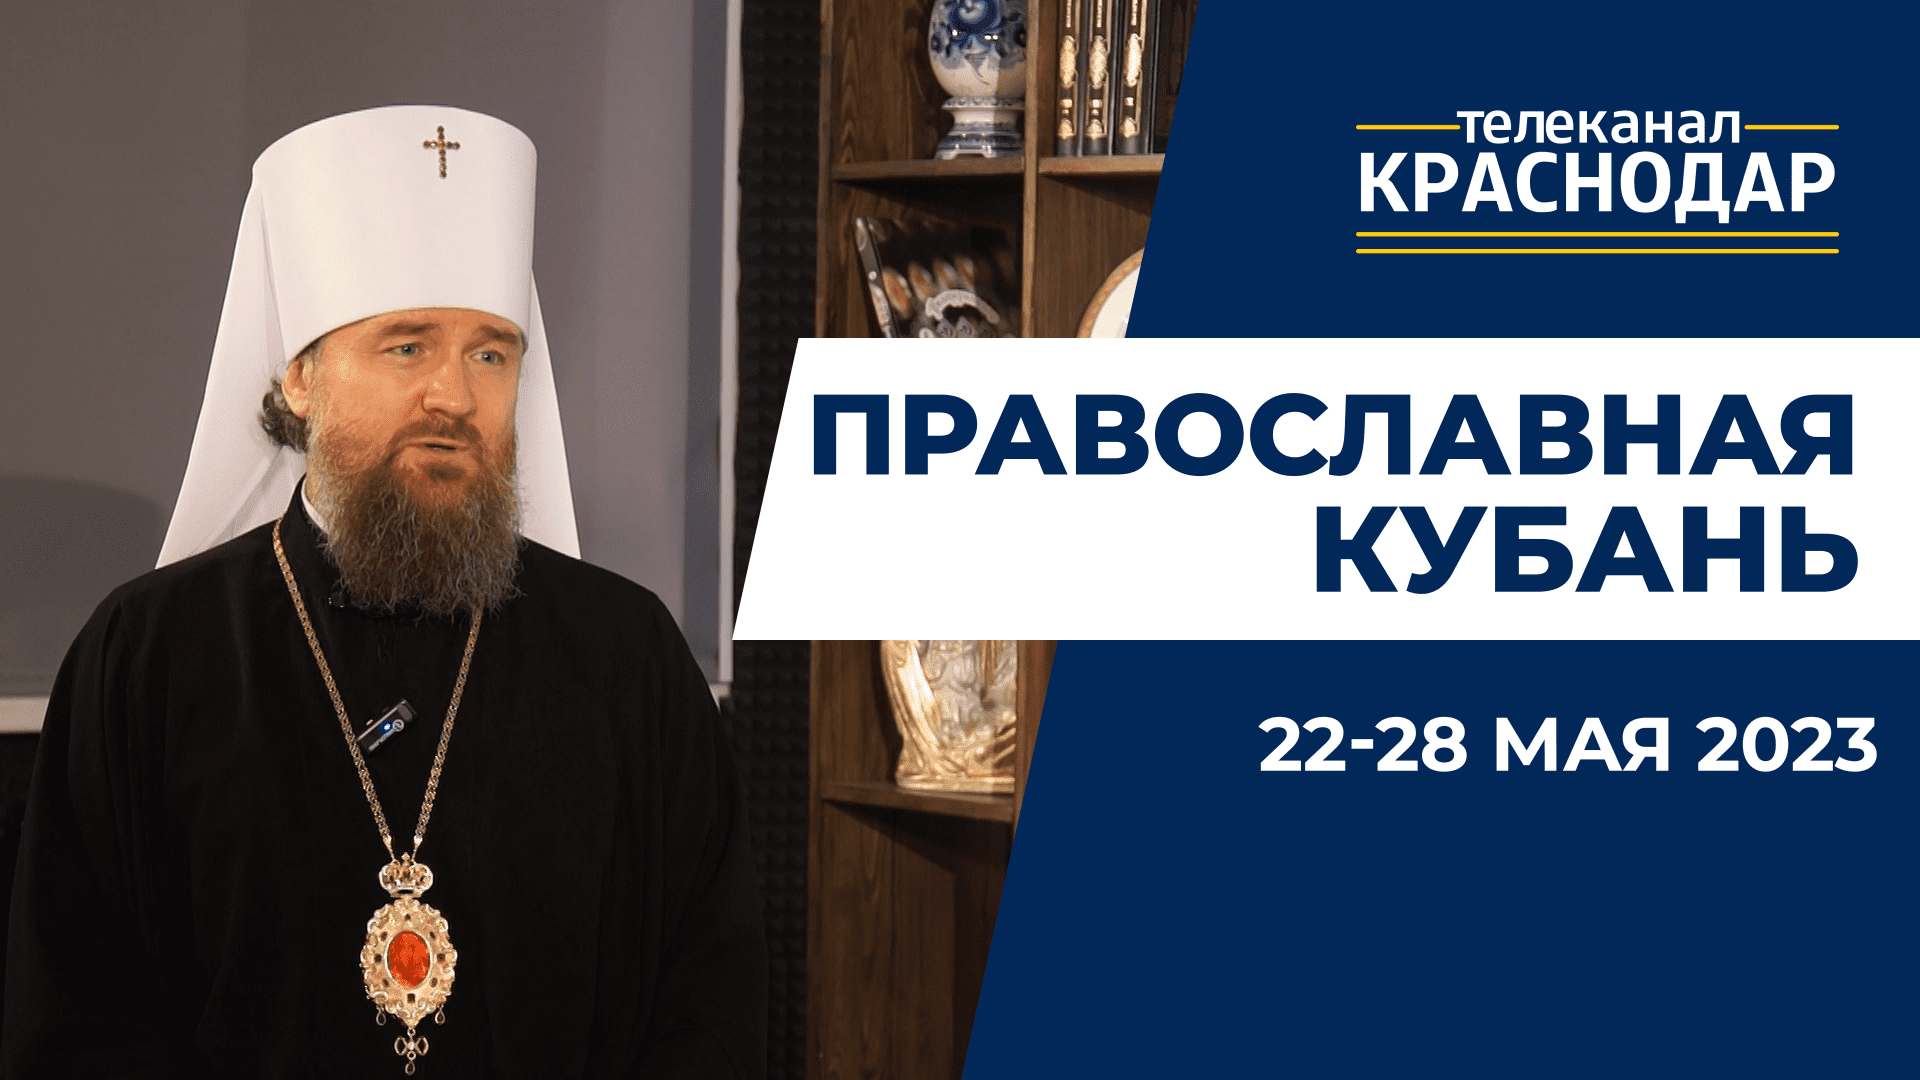 «Православная Кубань»: какие церковные праздники отмечают с 22 по 28 мая?